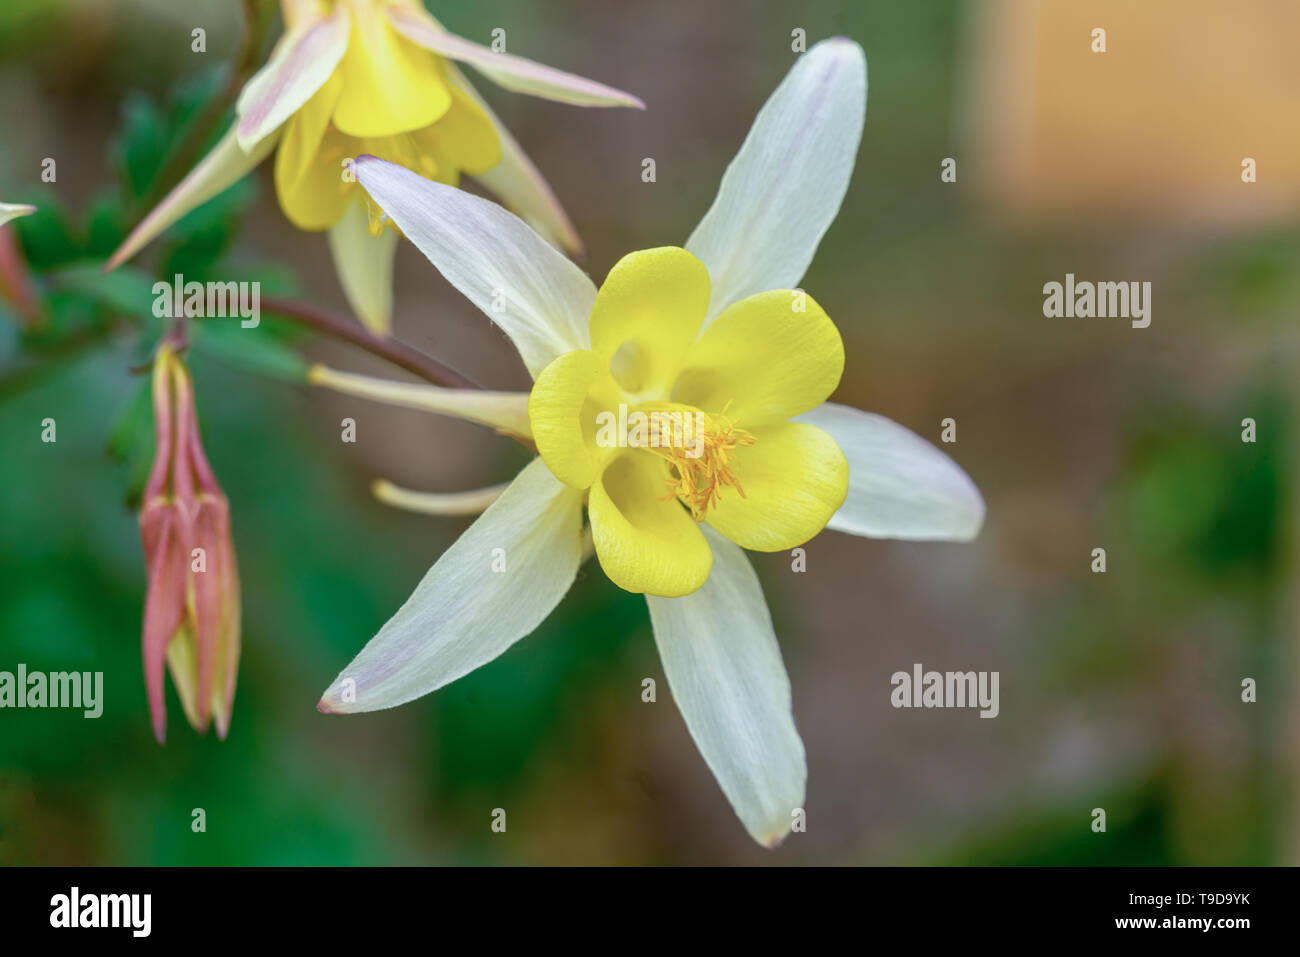 Makro Nahaufnahme eines isolierten weiße Akelei (Aquilegia vulgaris) Blüte zeigt viele Details wie Blütenstempel und Pollen Stockfoto